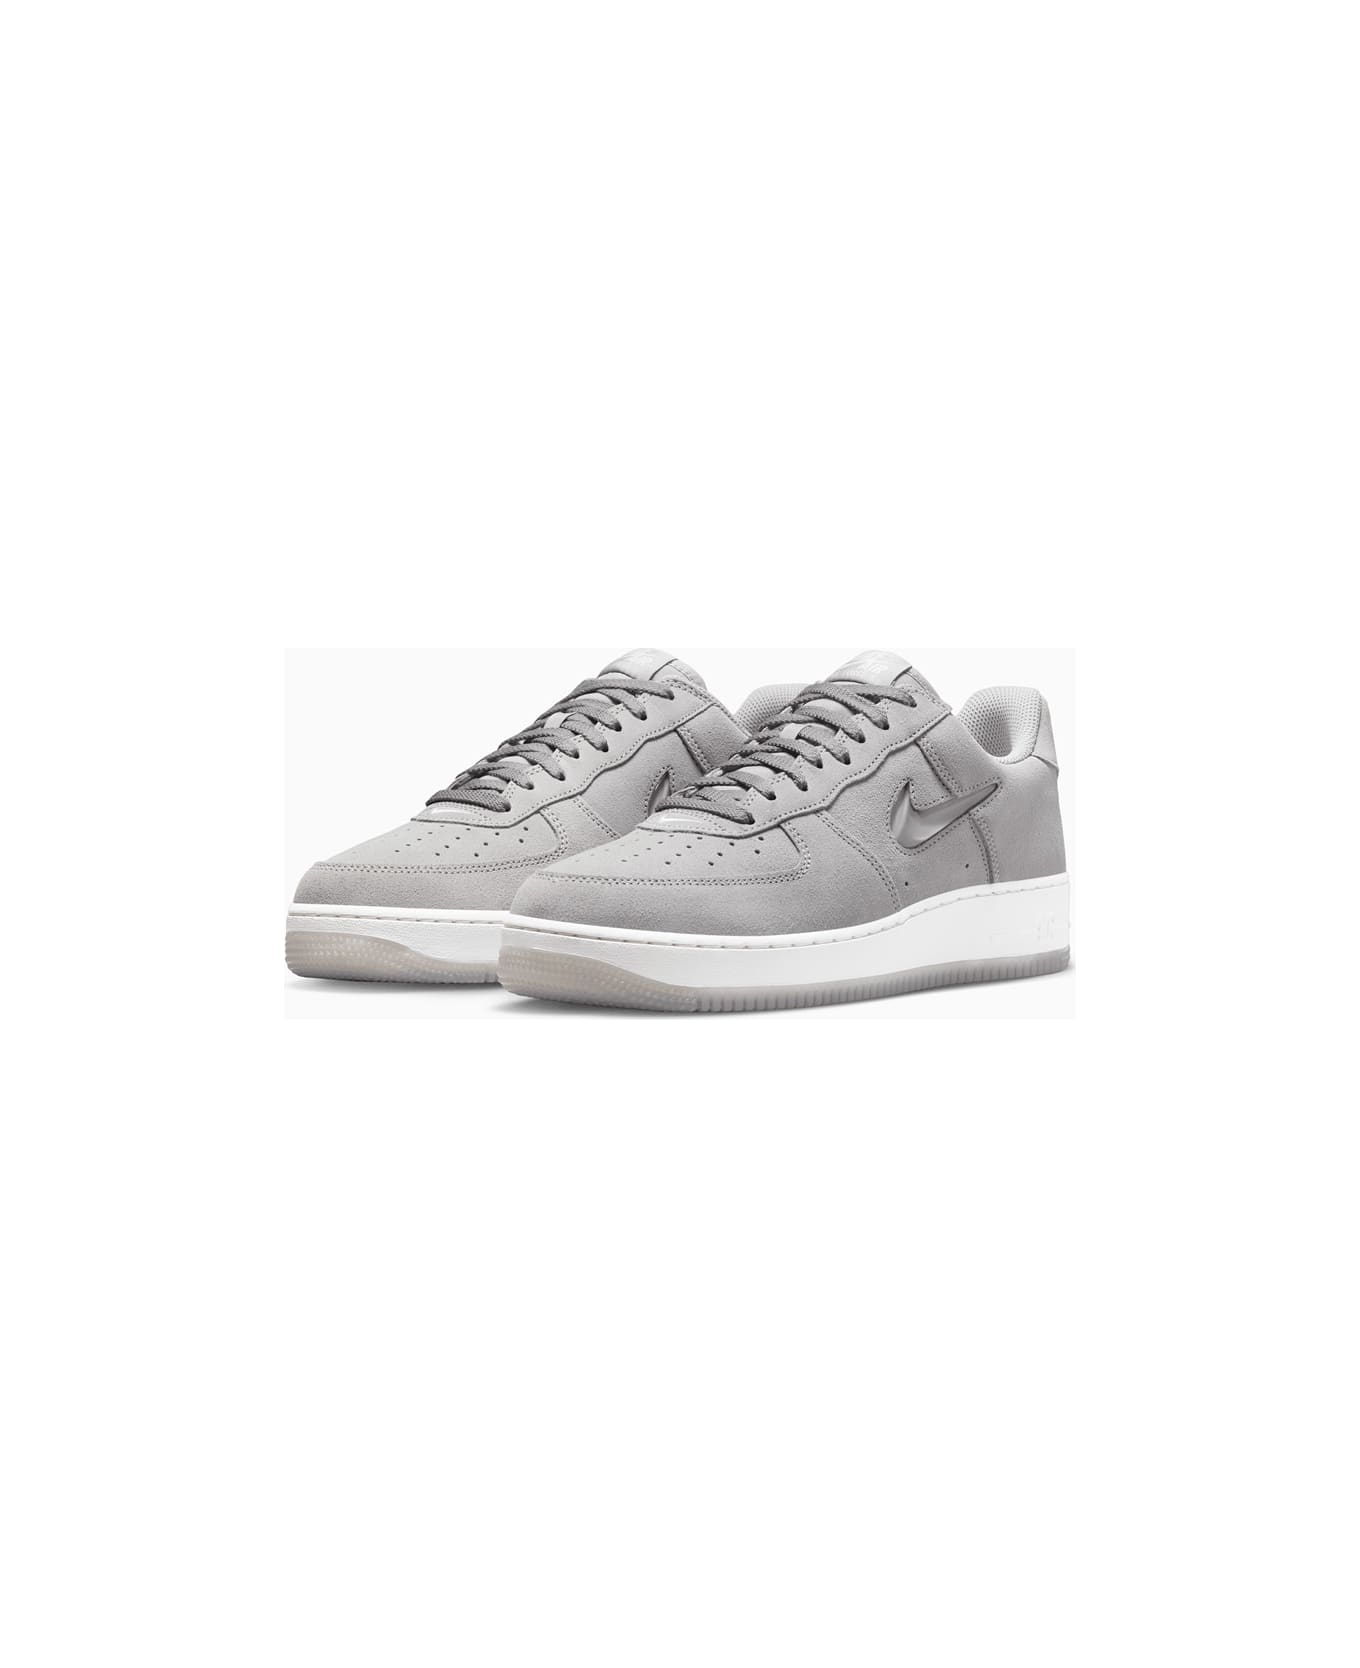 Nike Air Force 1 Low Retro Sneakers Dv0785-003 - Grey スニーカー